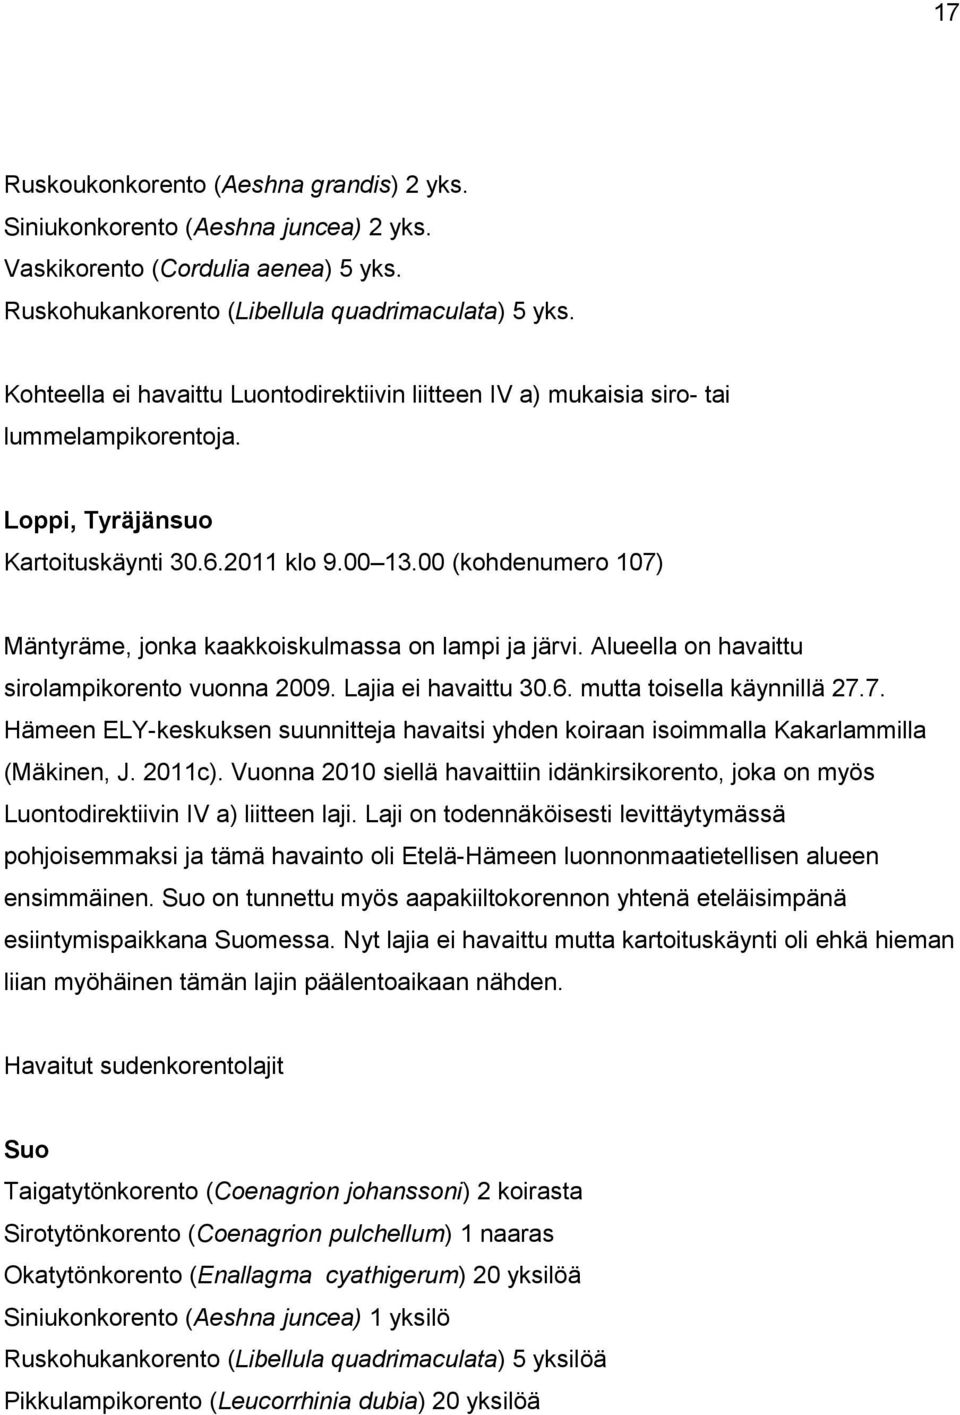 00 (kohdenumero 107) Mäntyräme, jonka kaakkoiskulmassa on lampi ja järvi. Alueella on havaittu sirolampikorento vuonna 2009. Lajia ei havaittu 30.6. mutta toisella käynnillä 27.7. Hämeen ELY-keskuksen suunnitteja havaitsi yhden koiraan isoimmalla Kakarlammilla (Mäkinen, J.